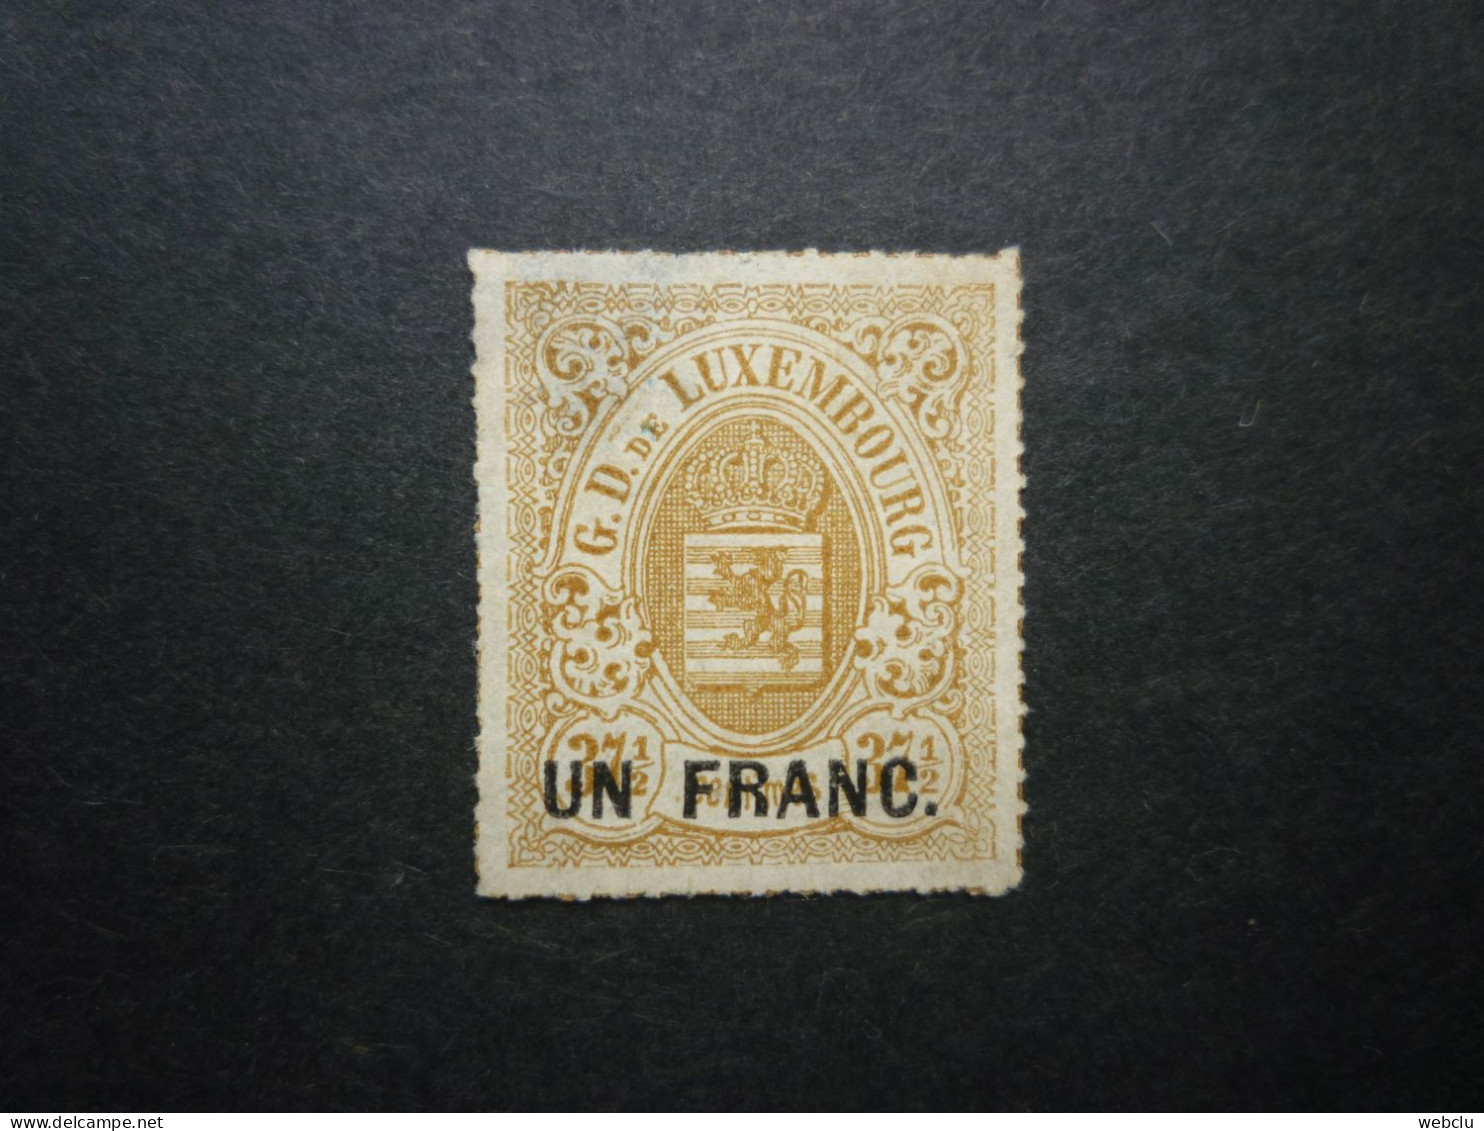 Luxemburg Luxembourg Armoiries 1865 Mi 25 (*), RARR!! - 1859-1880 Wappen & Heraldik